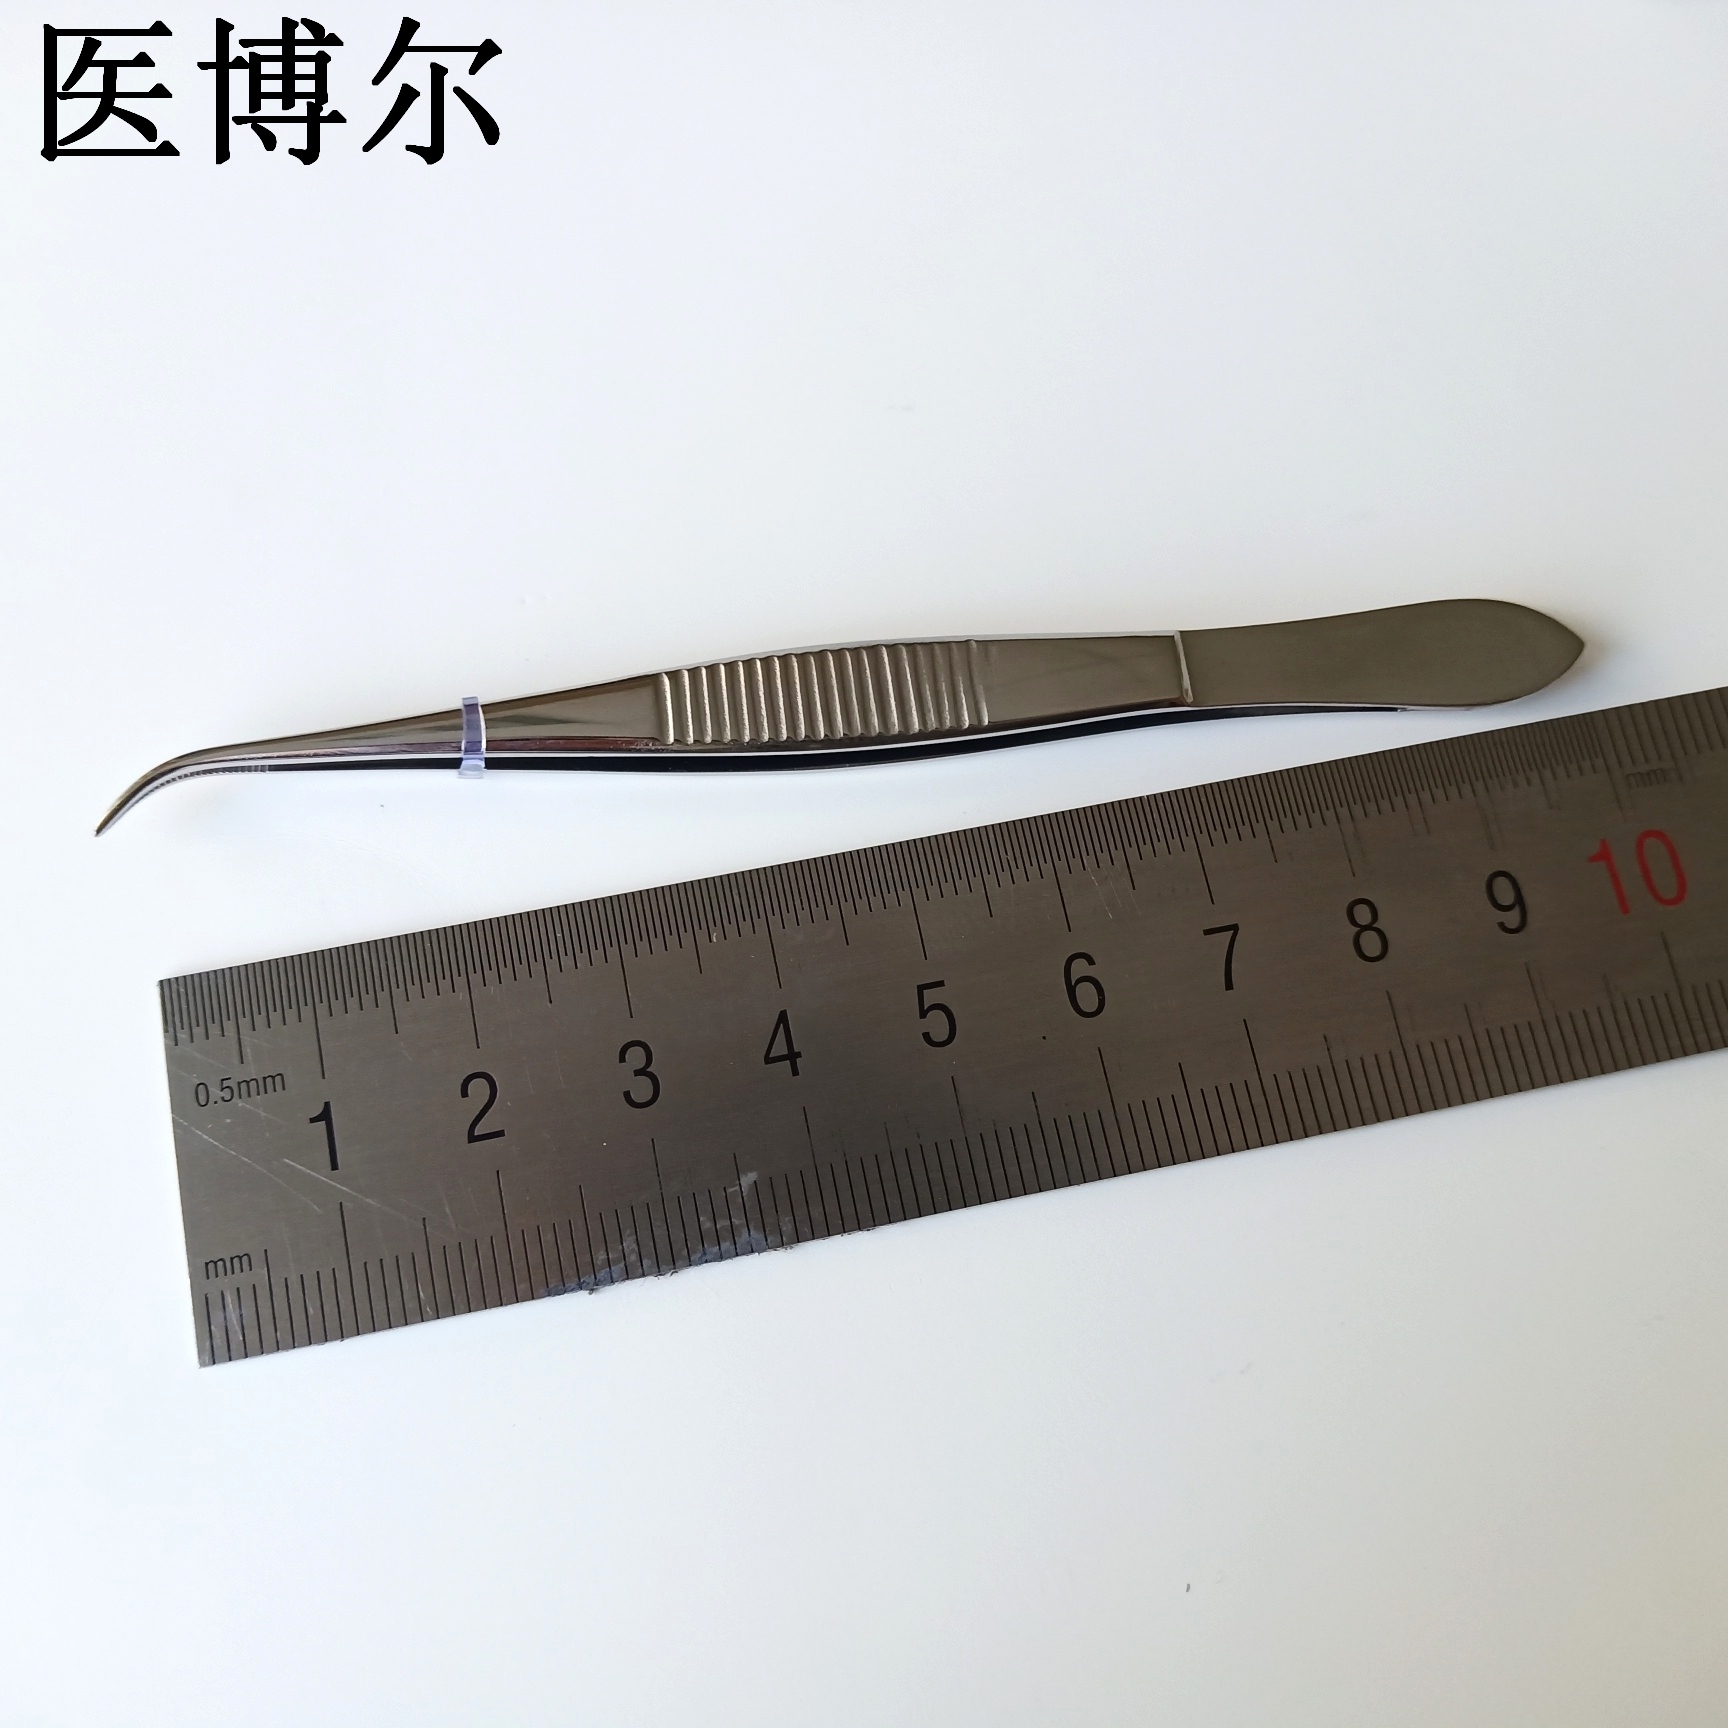 弯尖镊子 10cm (9).jpg